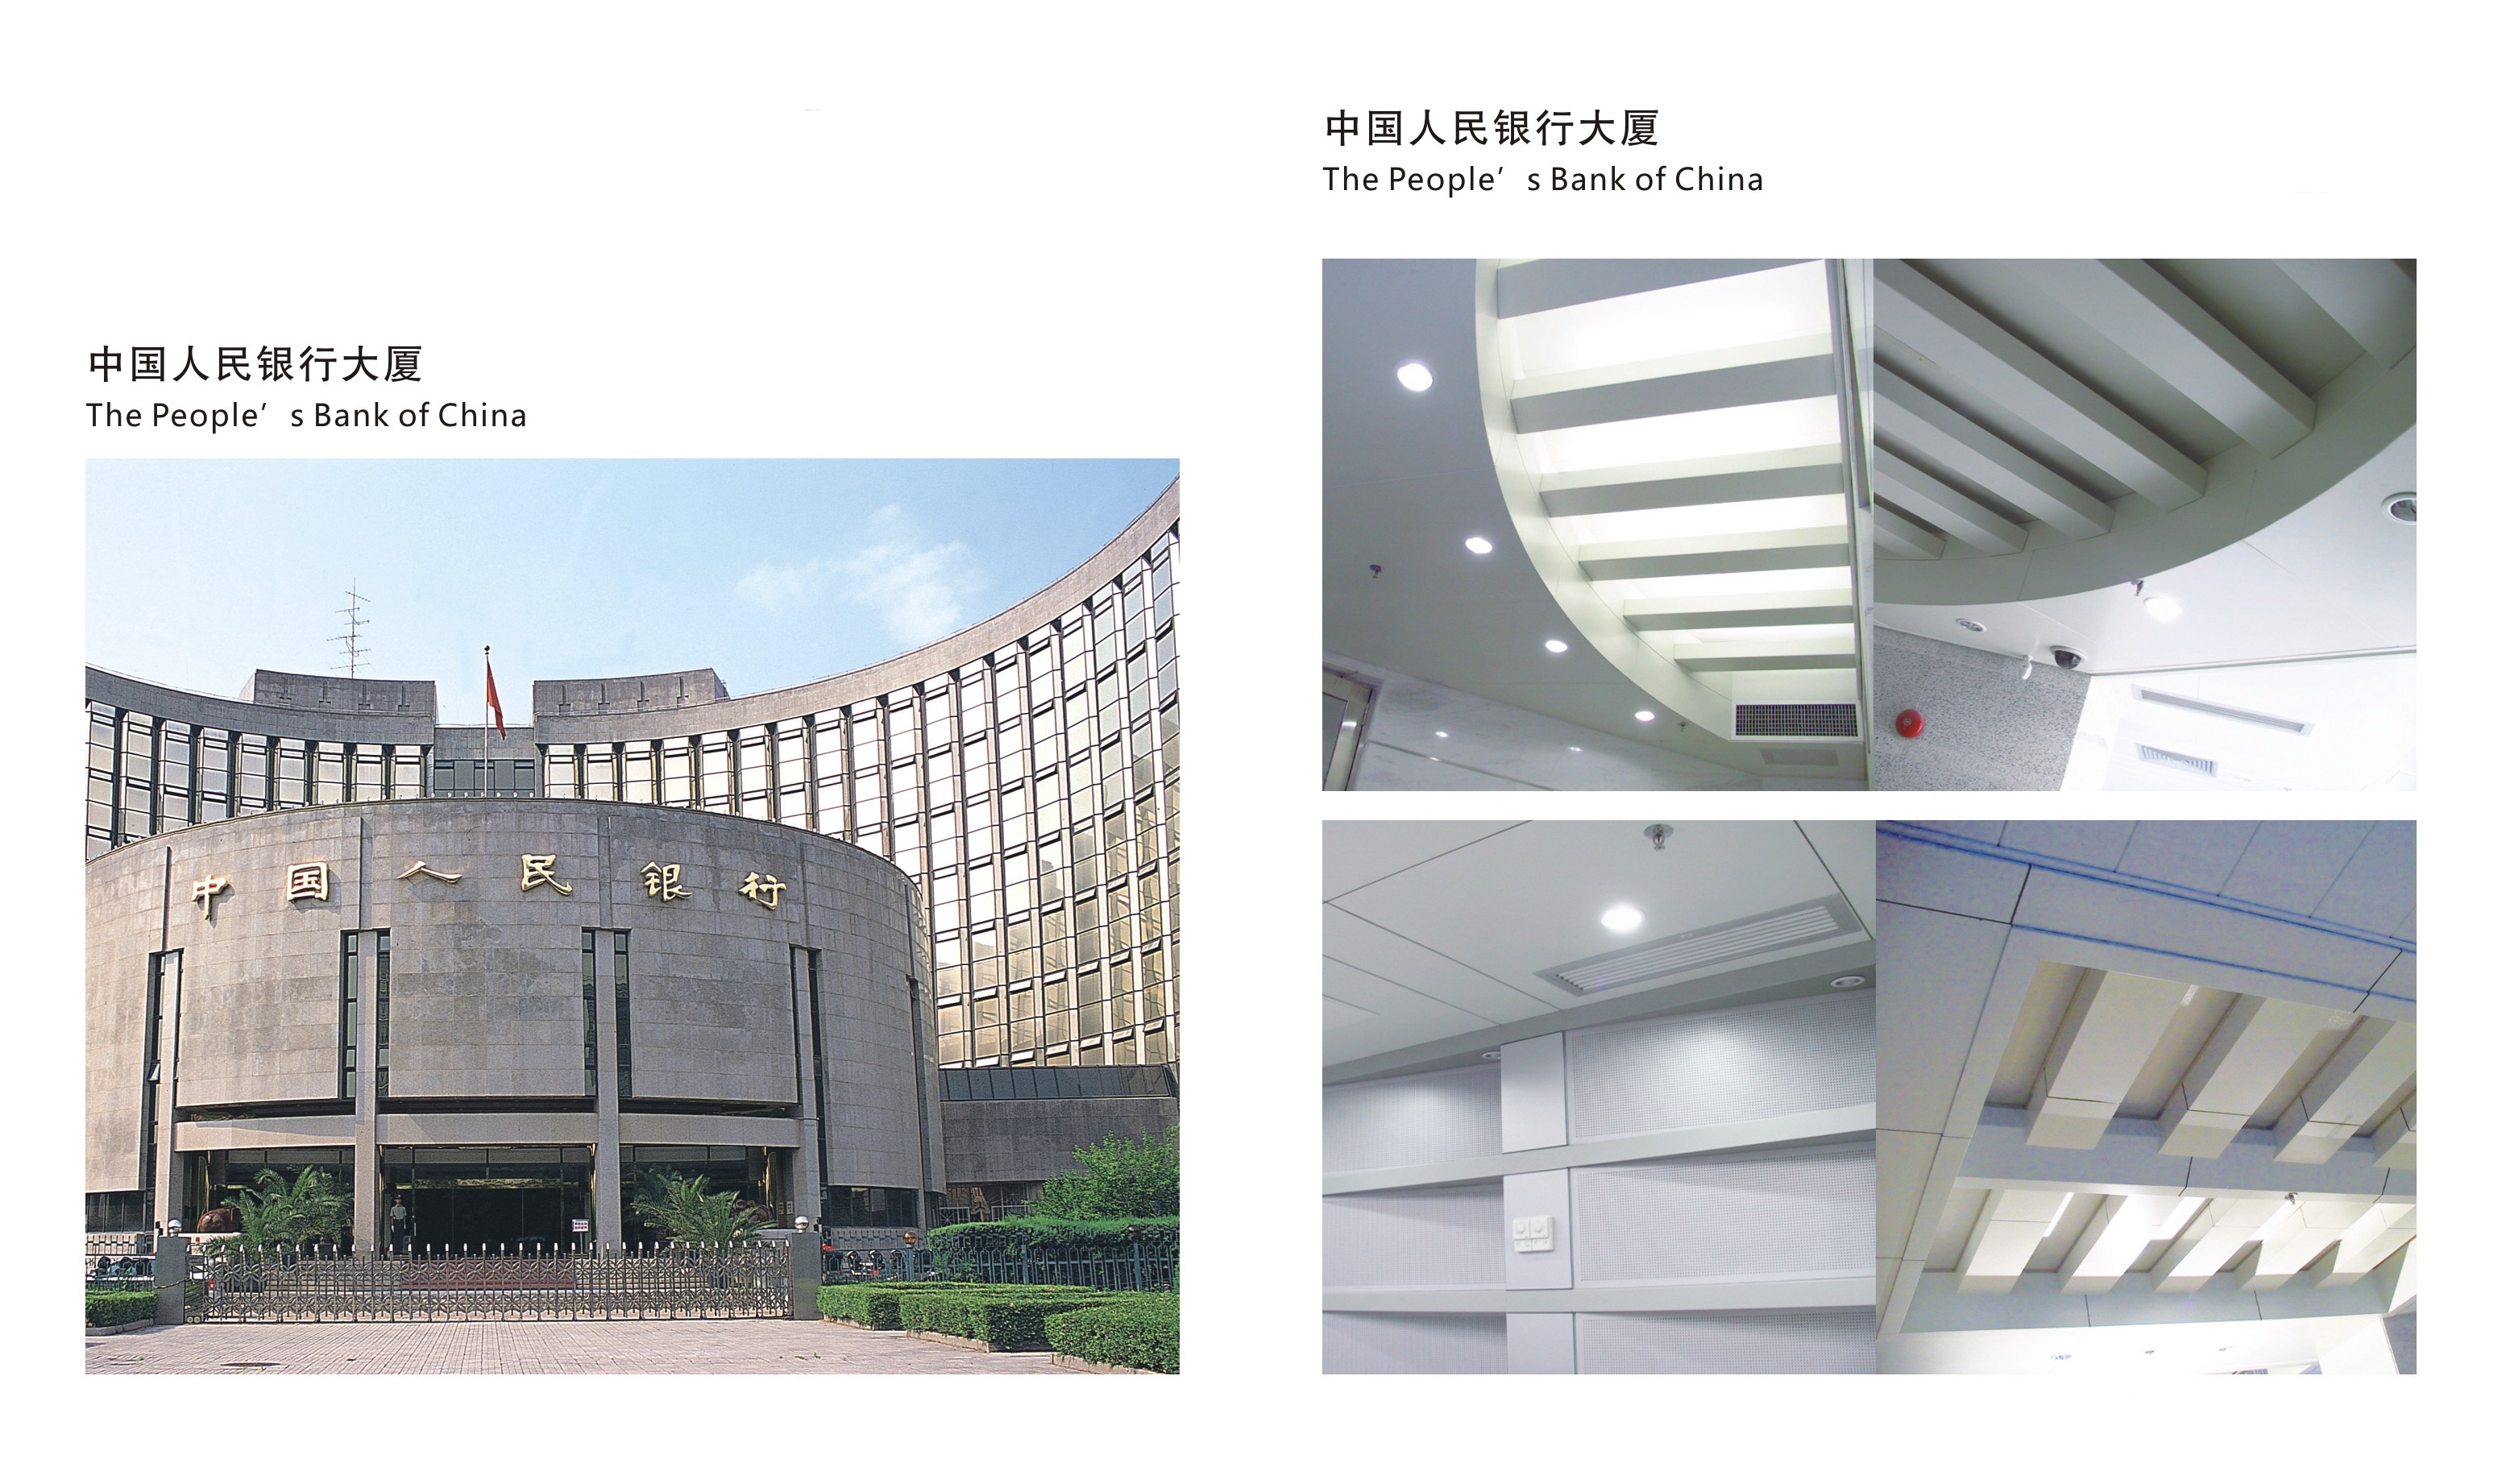 弧形鋁蜂窩板幕墻中國人民銀行大廈